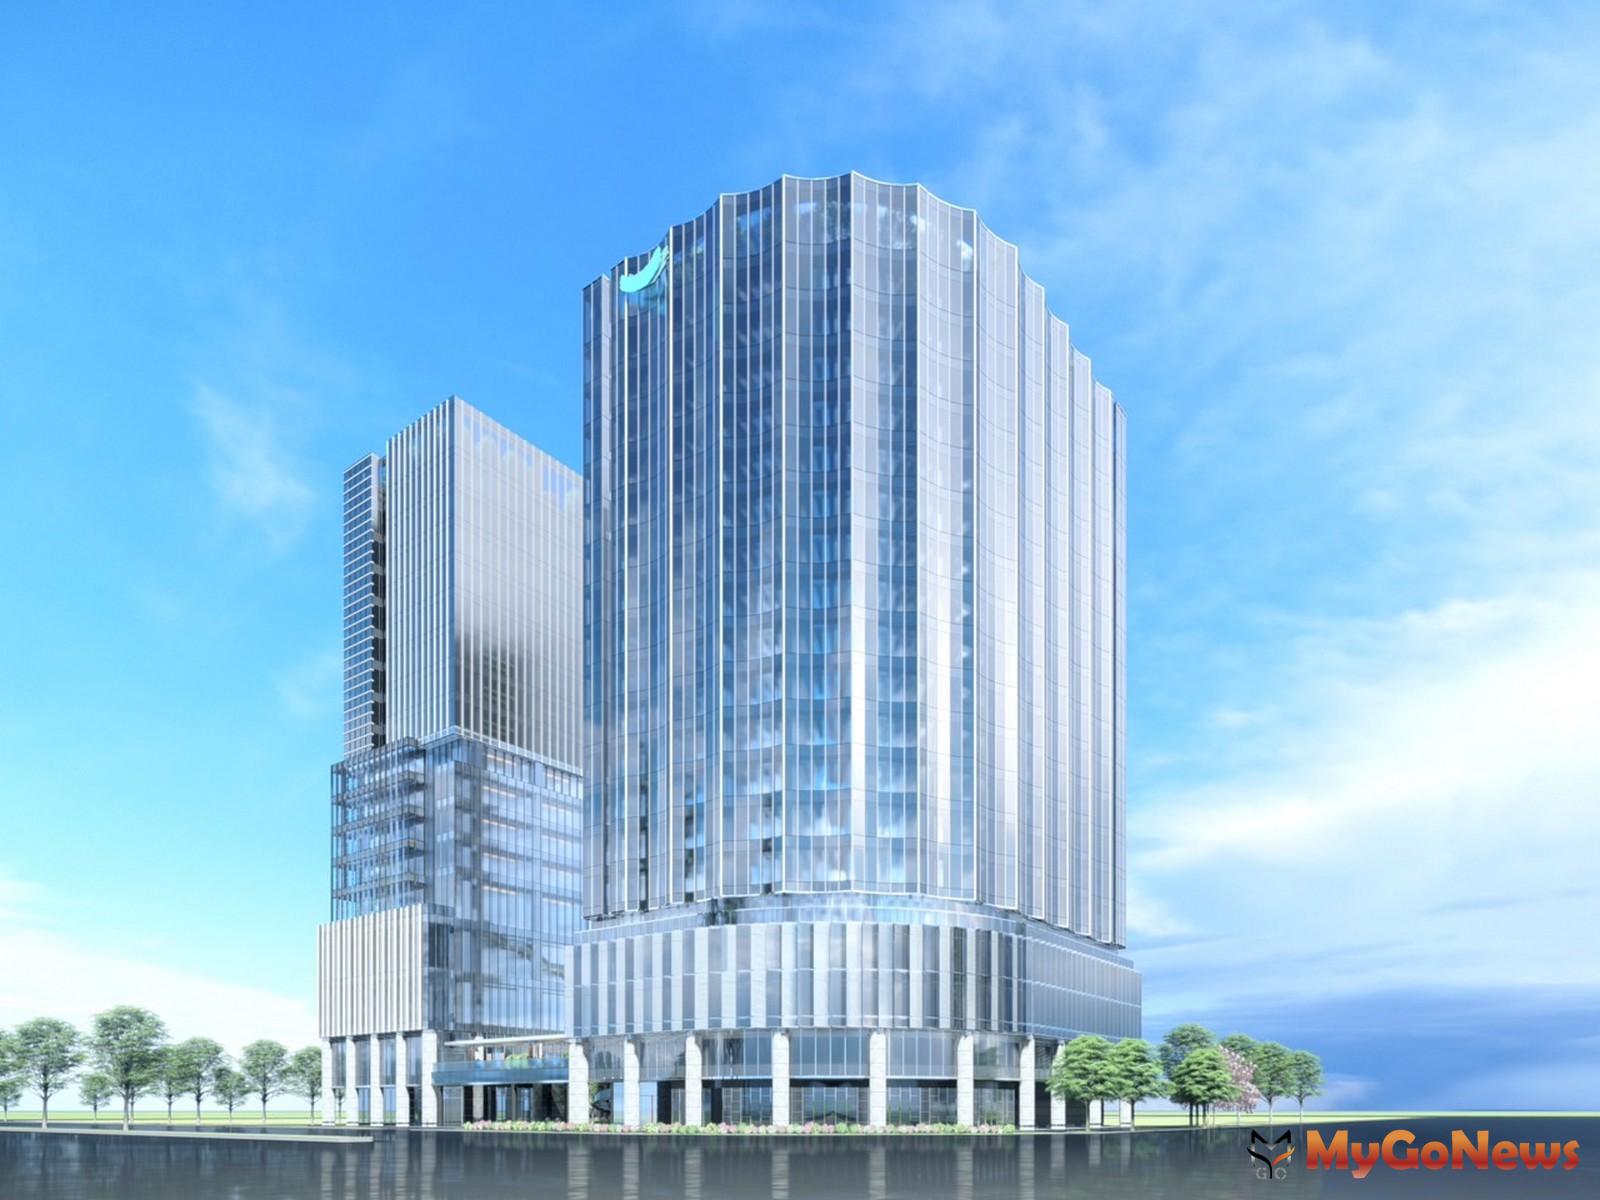  「海悅國際大樓」將成為台灣首座同時申請LEED和WELL雙白金級兩大國際認證，並獲得台灣綠建築、智慧建築雙鑽石級標章的建築項目 MyGoNews房地產新聞 市場快訊